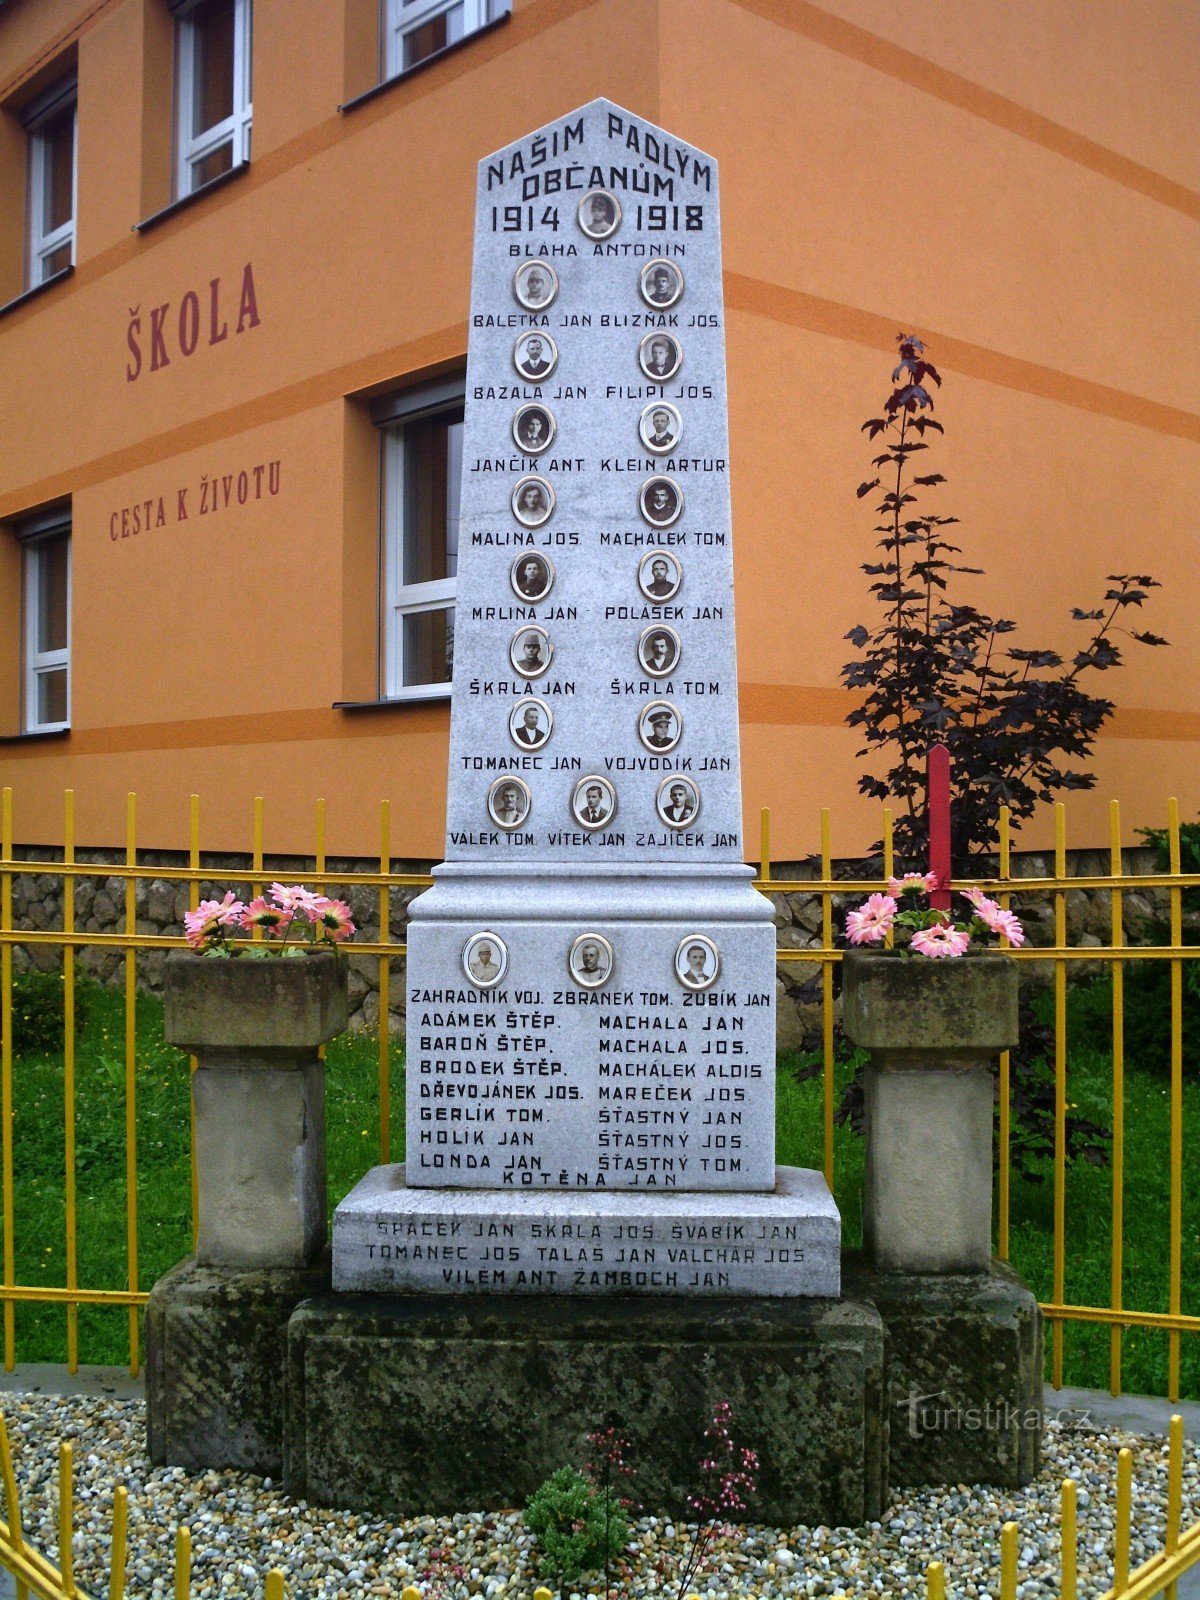 Monument aux victimes de la Première Guerre mondiale